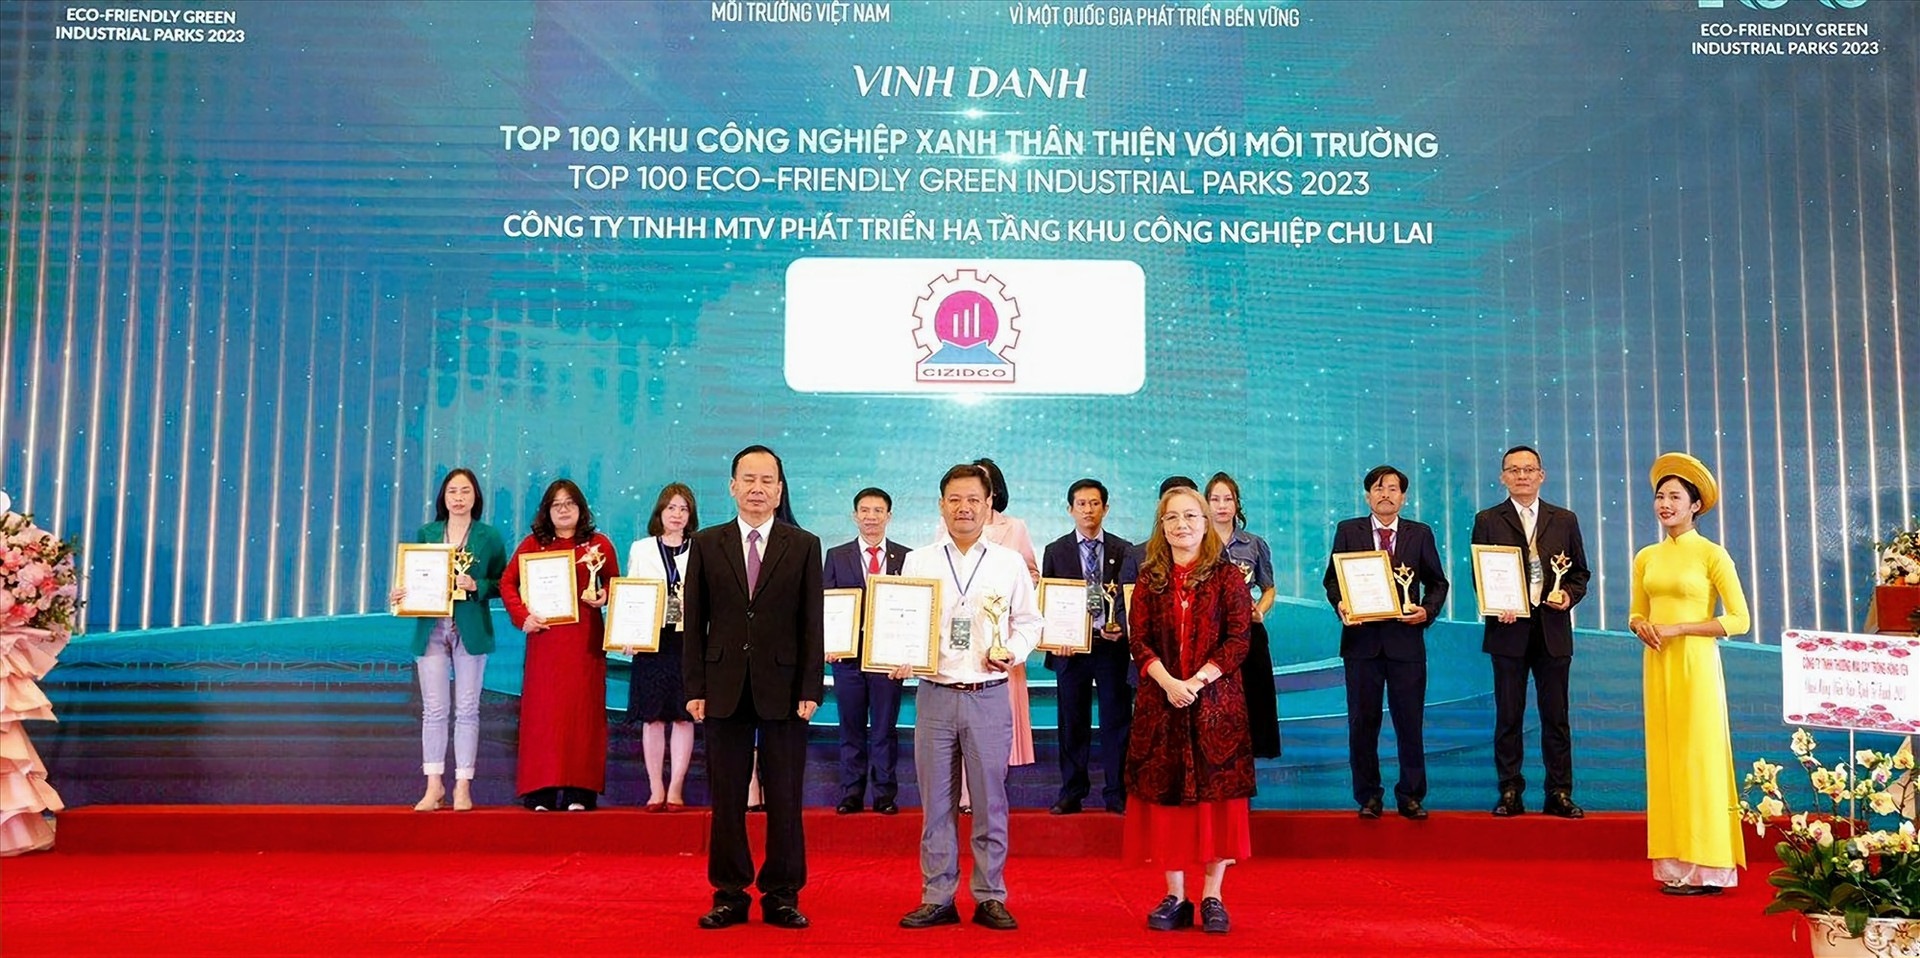 Ông Lê Công Bình -Phó Giám đốc CIZIDCO (giữa, hàng đầu) nhân Chứng nhận Top 100 Khu công nghiệp xanh thân thiện với môi trường của VEIA.  Ảnh CZIDCO cung cấp